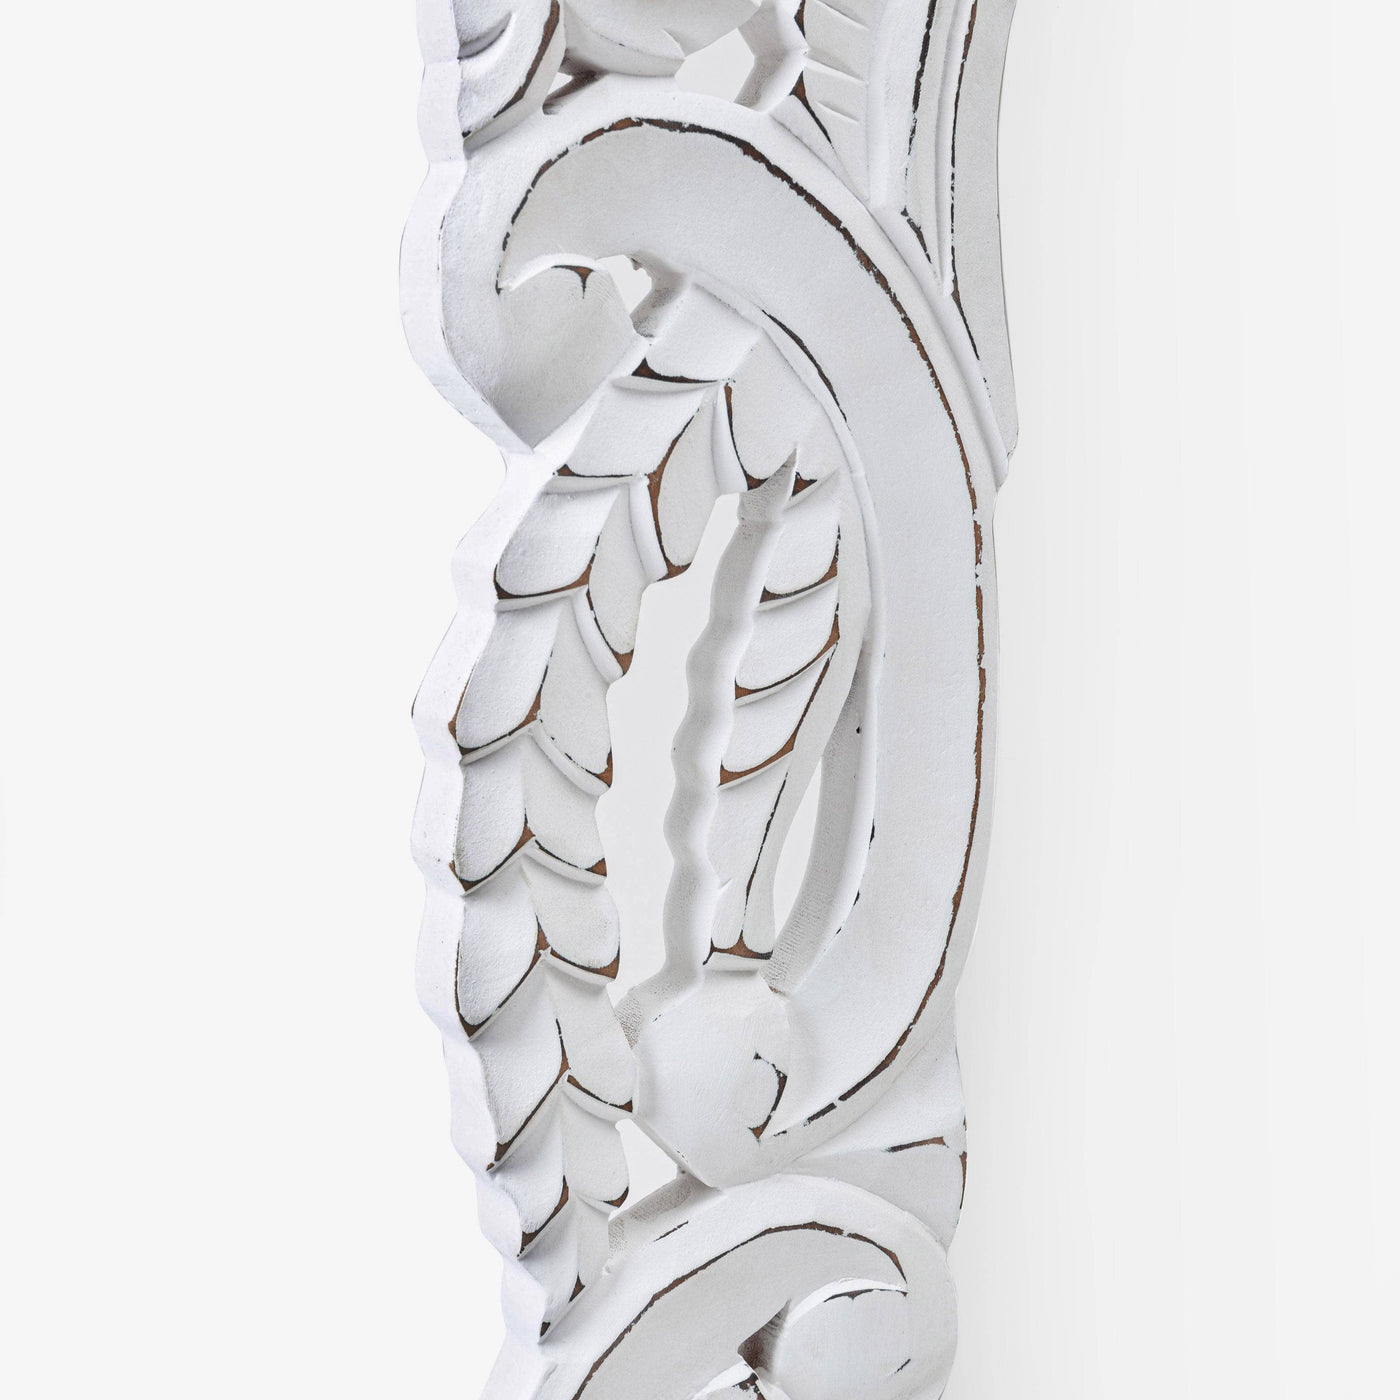 Esko Rectangular Wooden Mirror, Off-White, 60x120 cm - 6